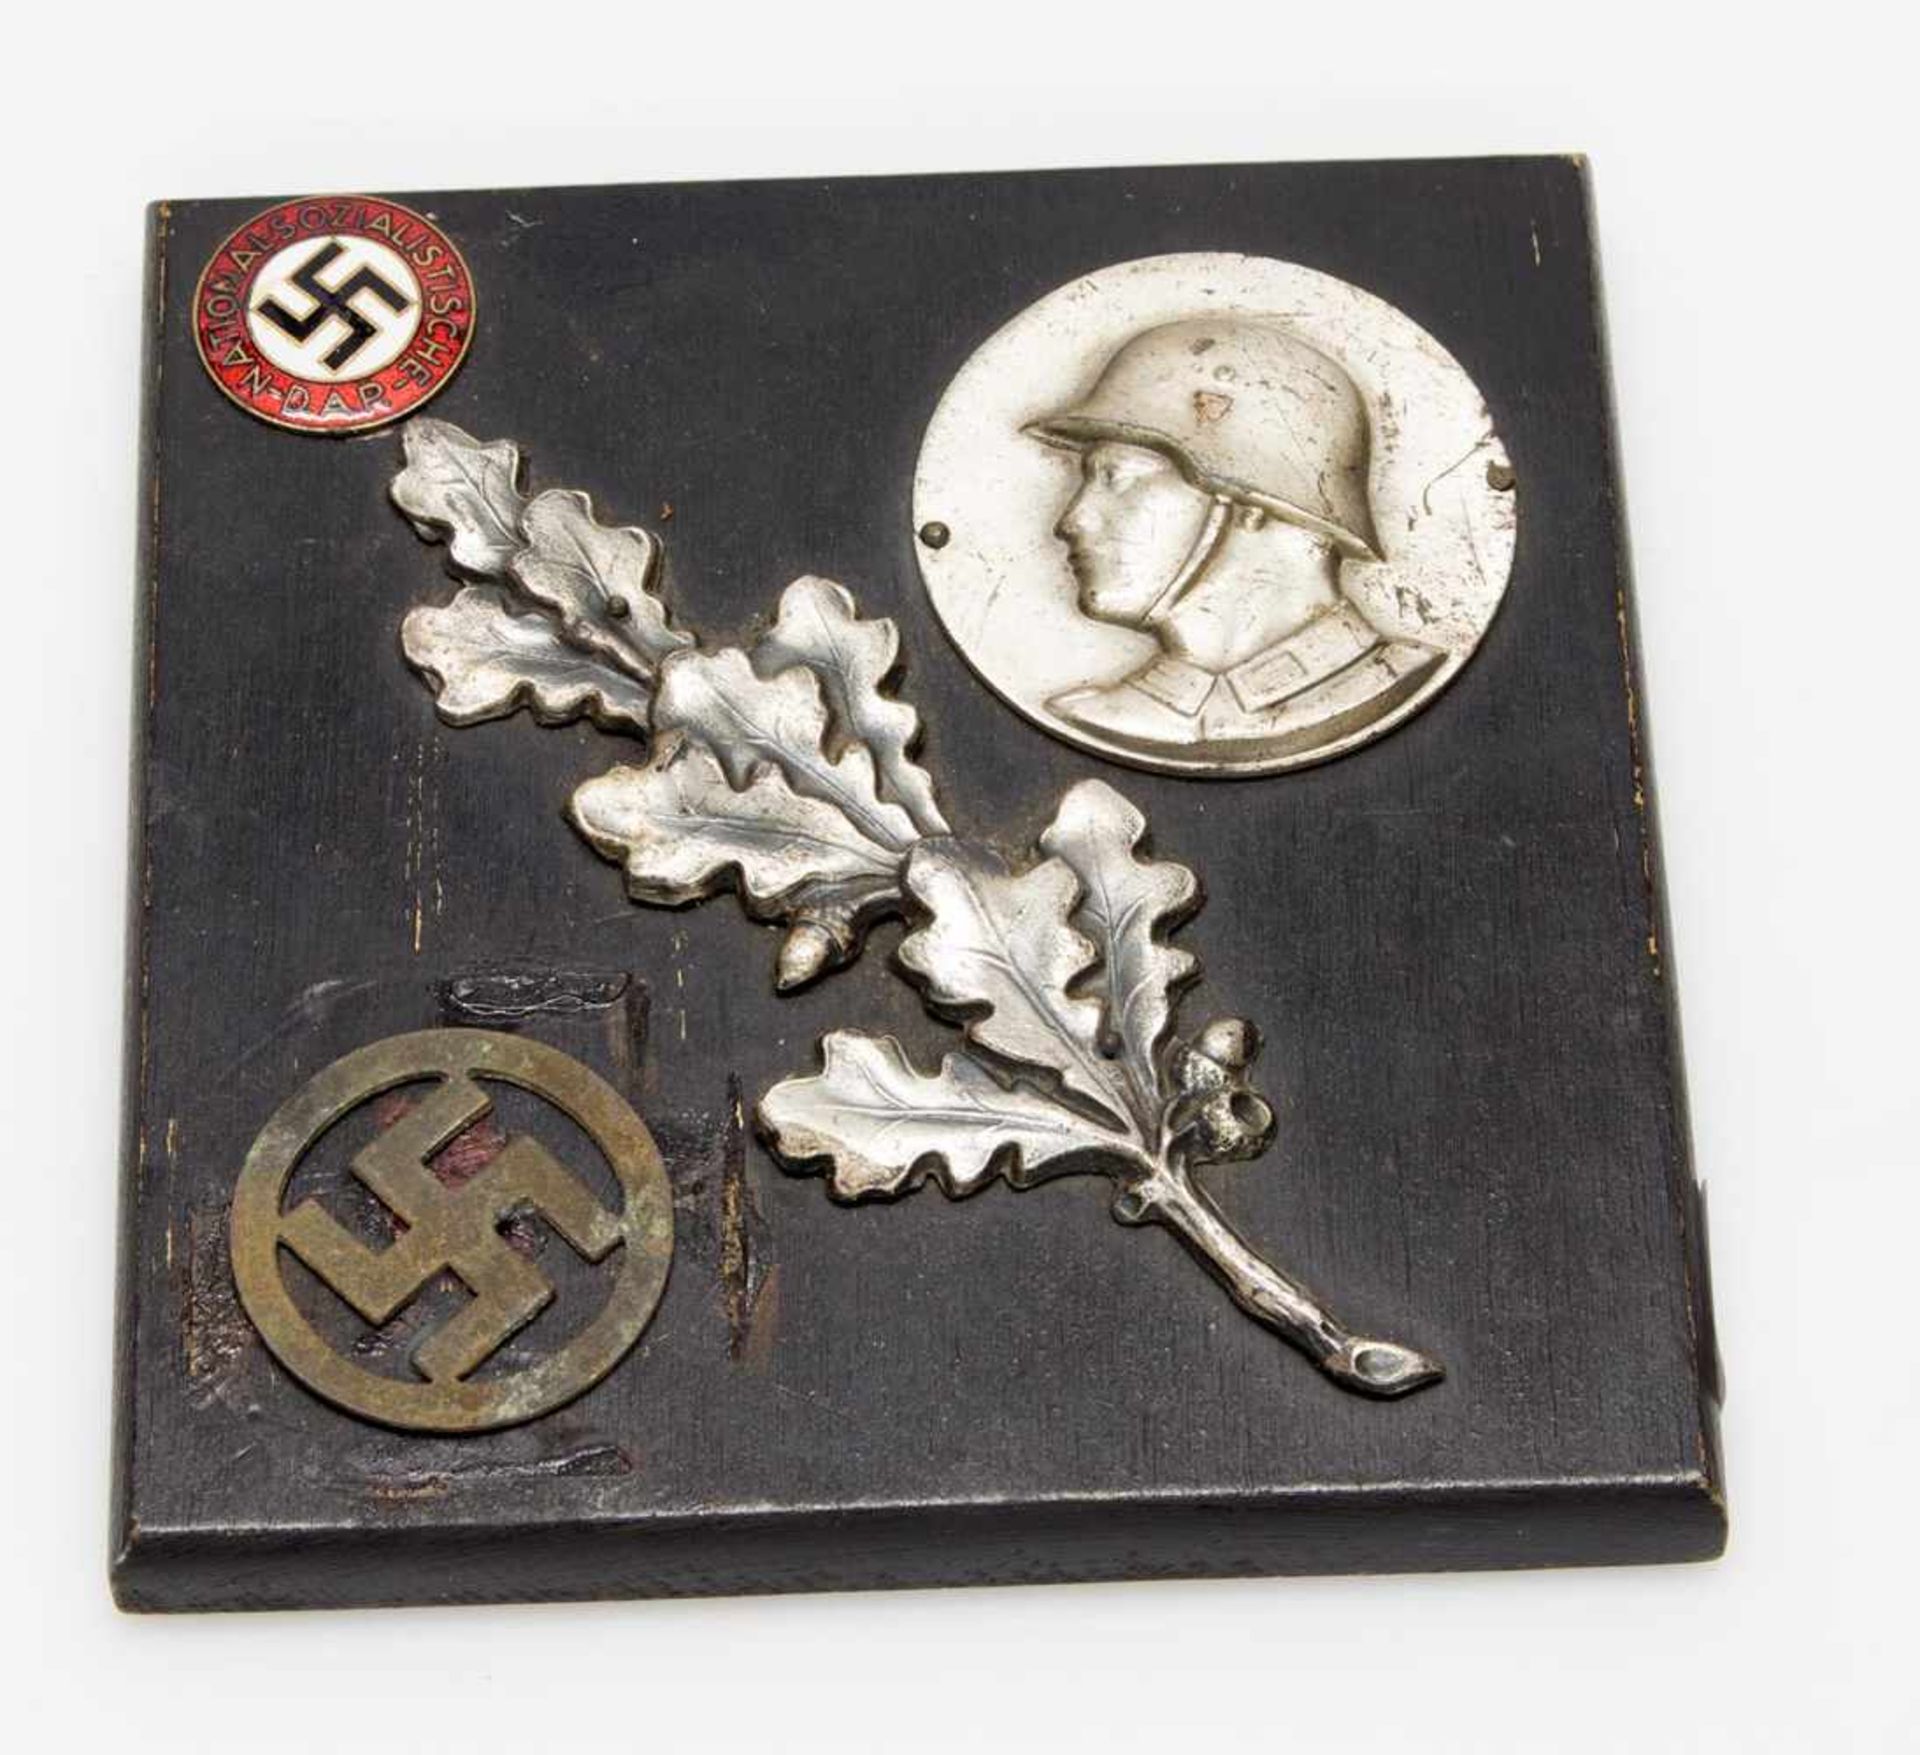 ErinnerungsplaketteII. WK, diverse Symbole u. Parteiabzeichen d. NSDAP auf Holzplatte aufgebracht